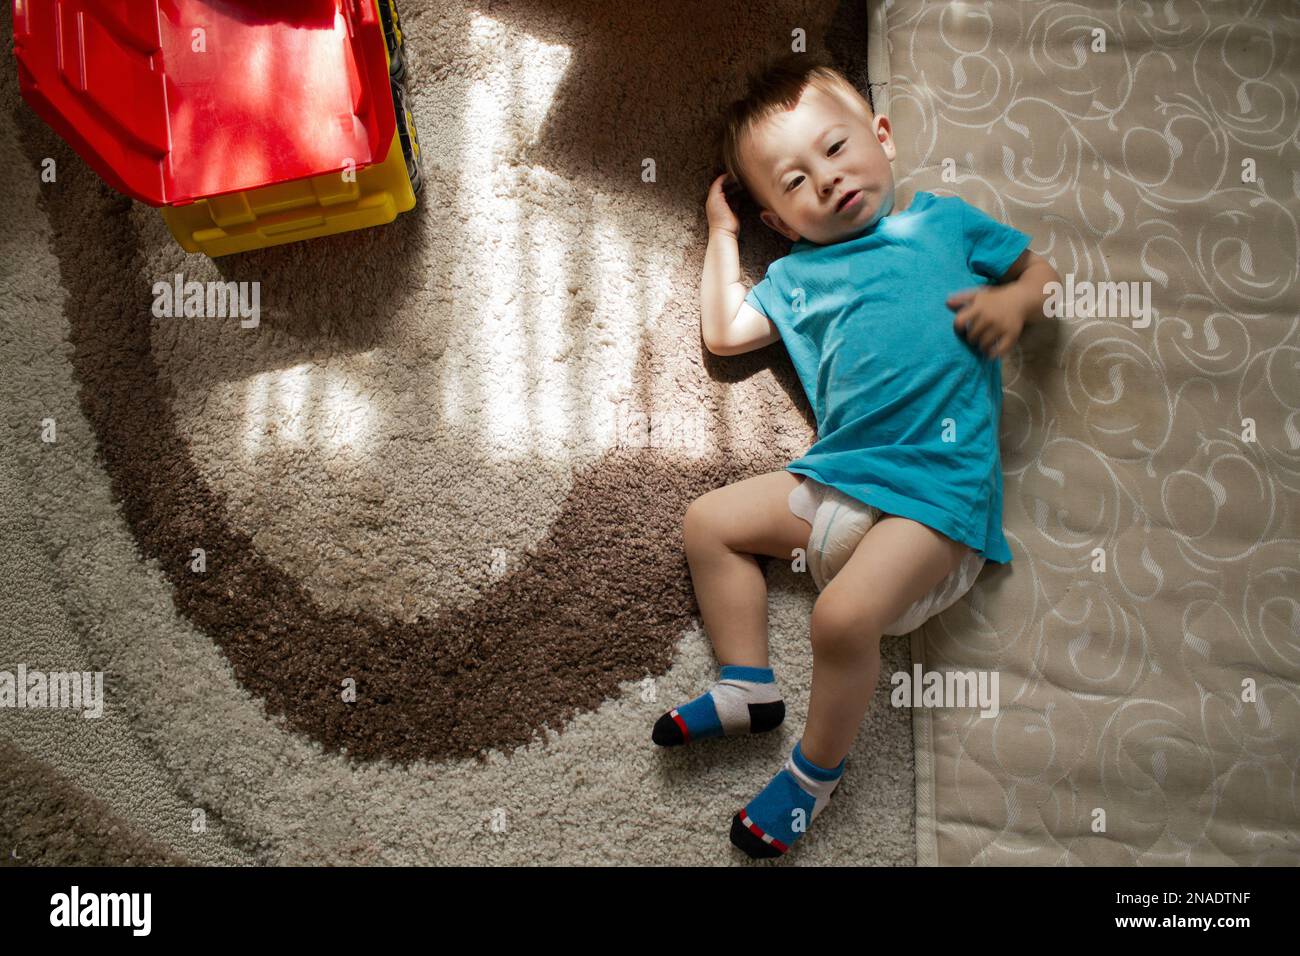 Der kleine Junge liegt auf dem Teppich neben der Matratze Stockfoto